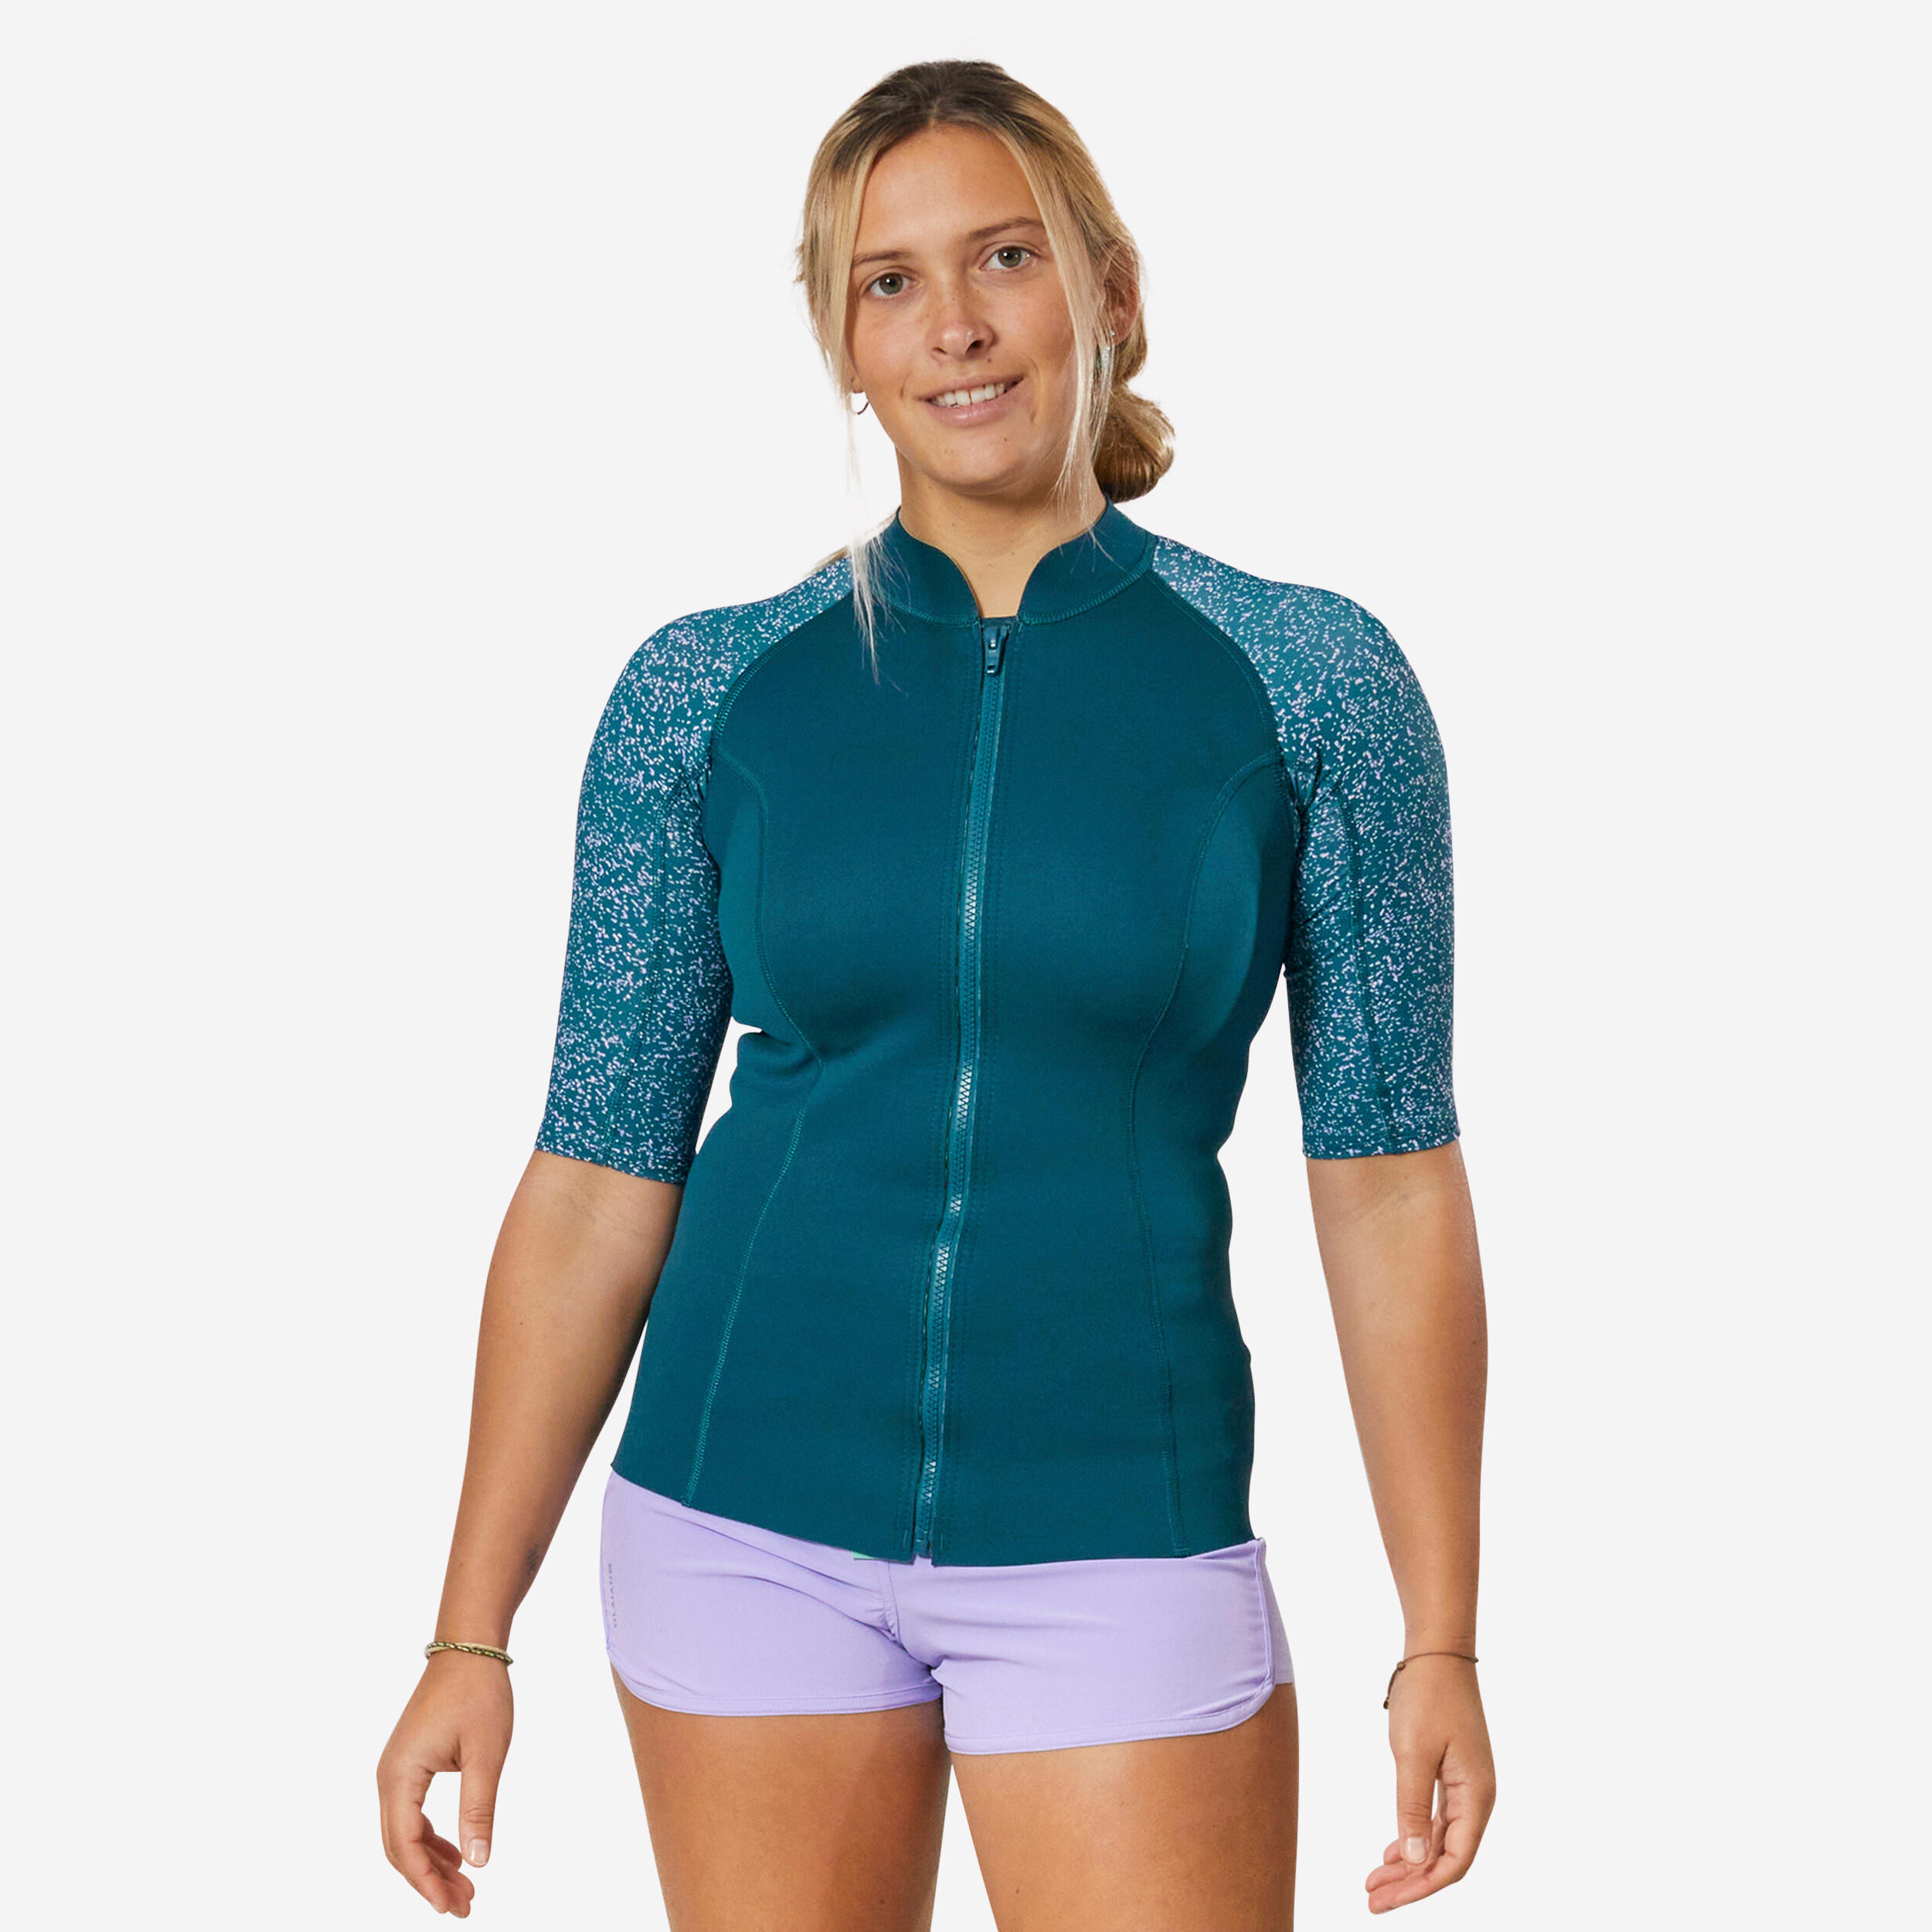 SUBEA Women's top anti-UV short-sleeved 1.5 mm neoprene navy blue